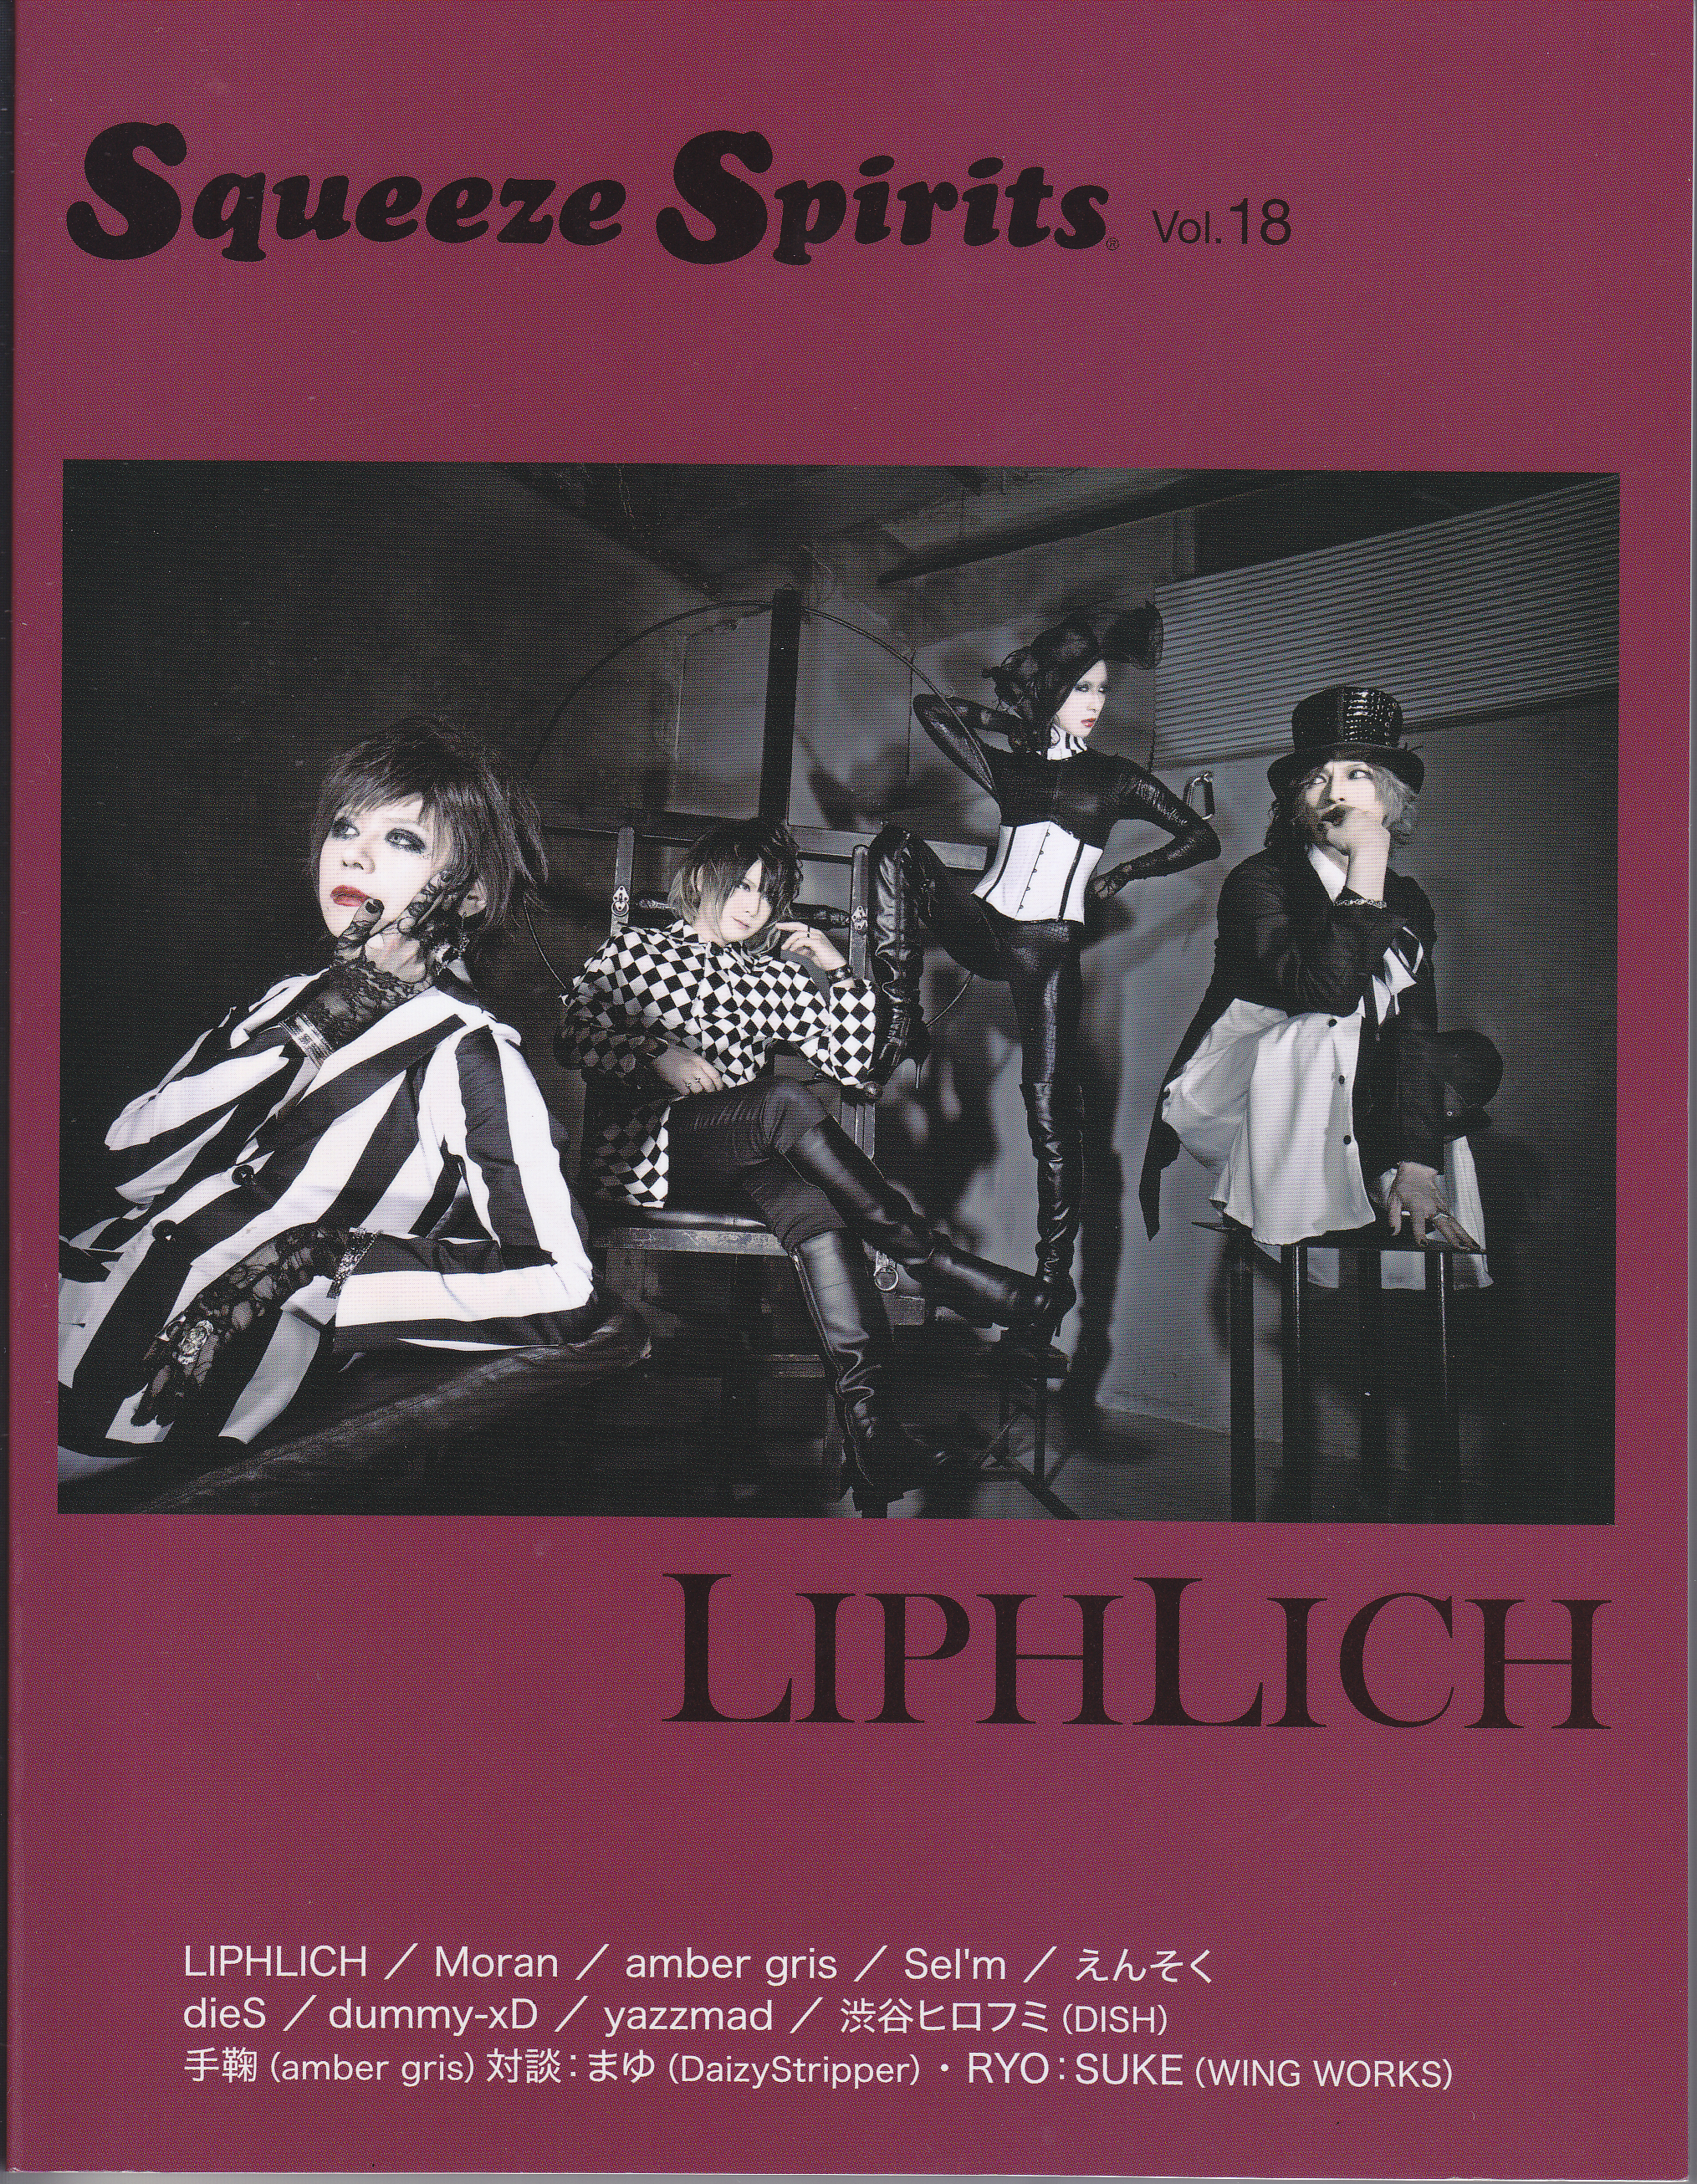 雑誌 Squeeze Spirits ( ザッシスクイーズスピリッツ )  の 書籍 Vol.18 表紙:LIPHLICH